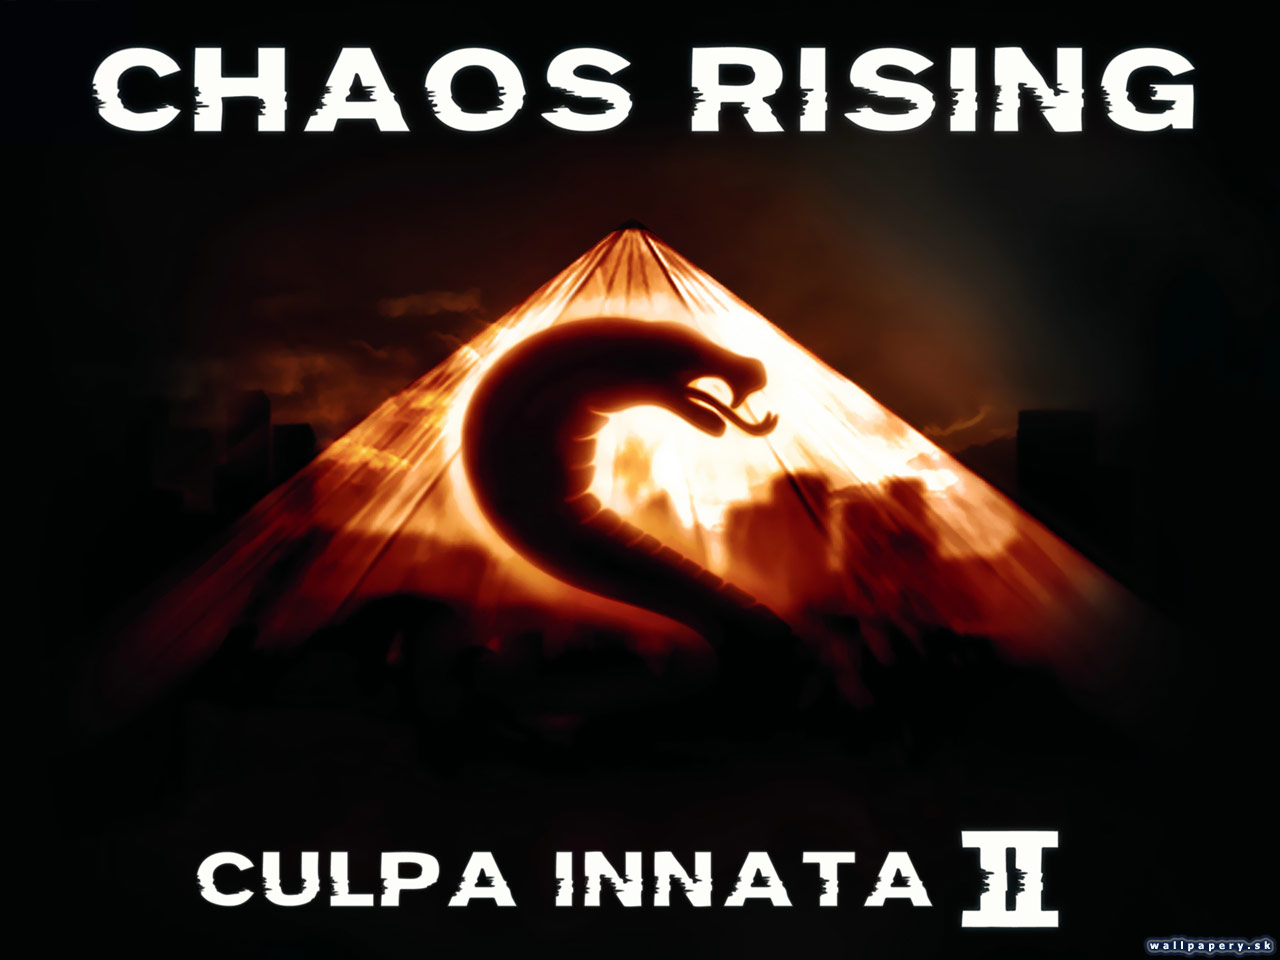 Culpa Innata 2: Chaos Rising - wallpaper 1